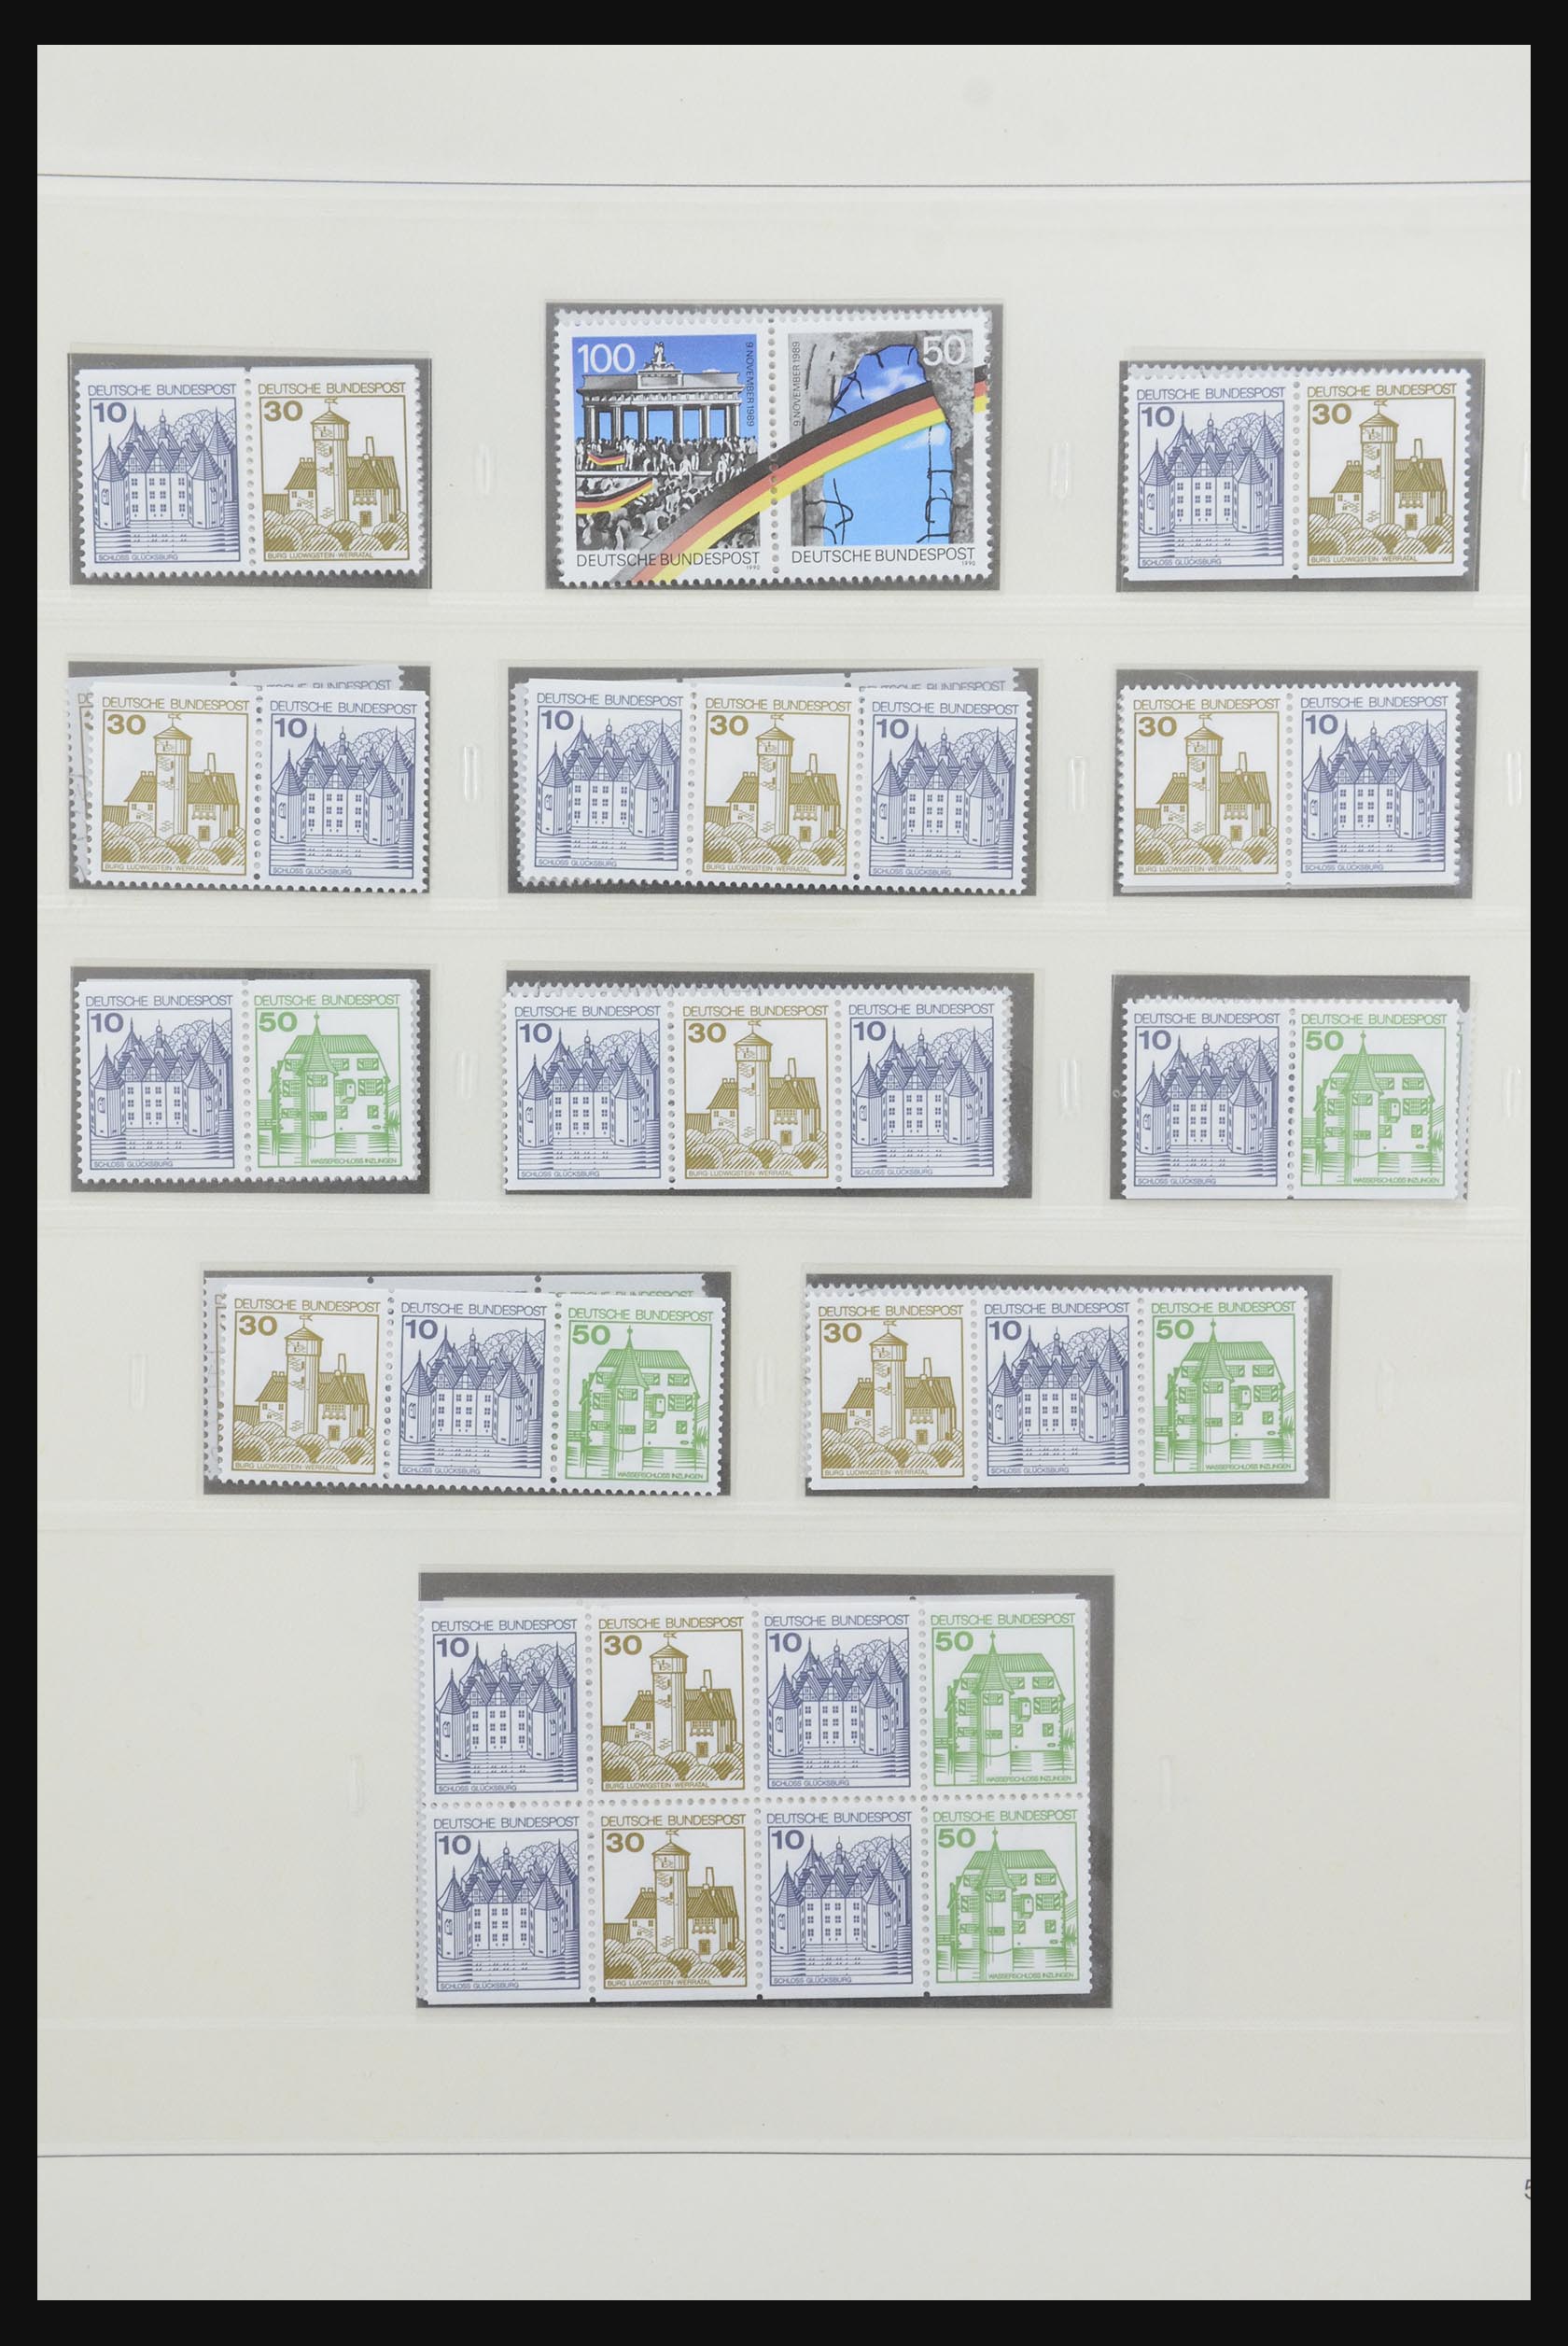 31842 072 - 31842 Bundespost combinations 1951-2003.